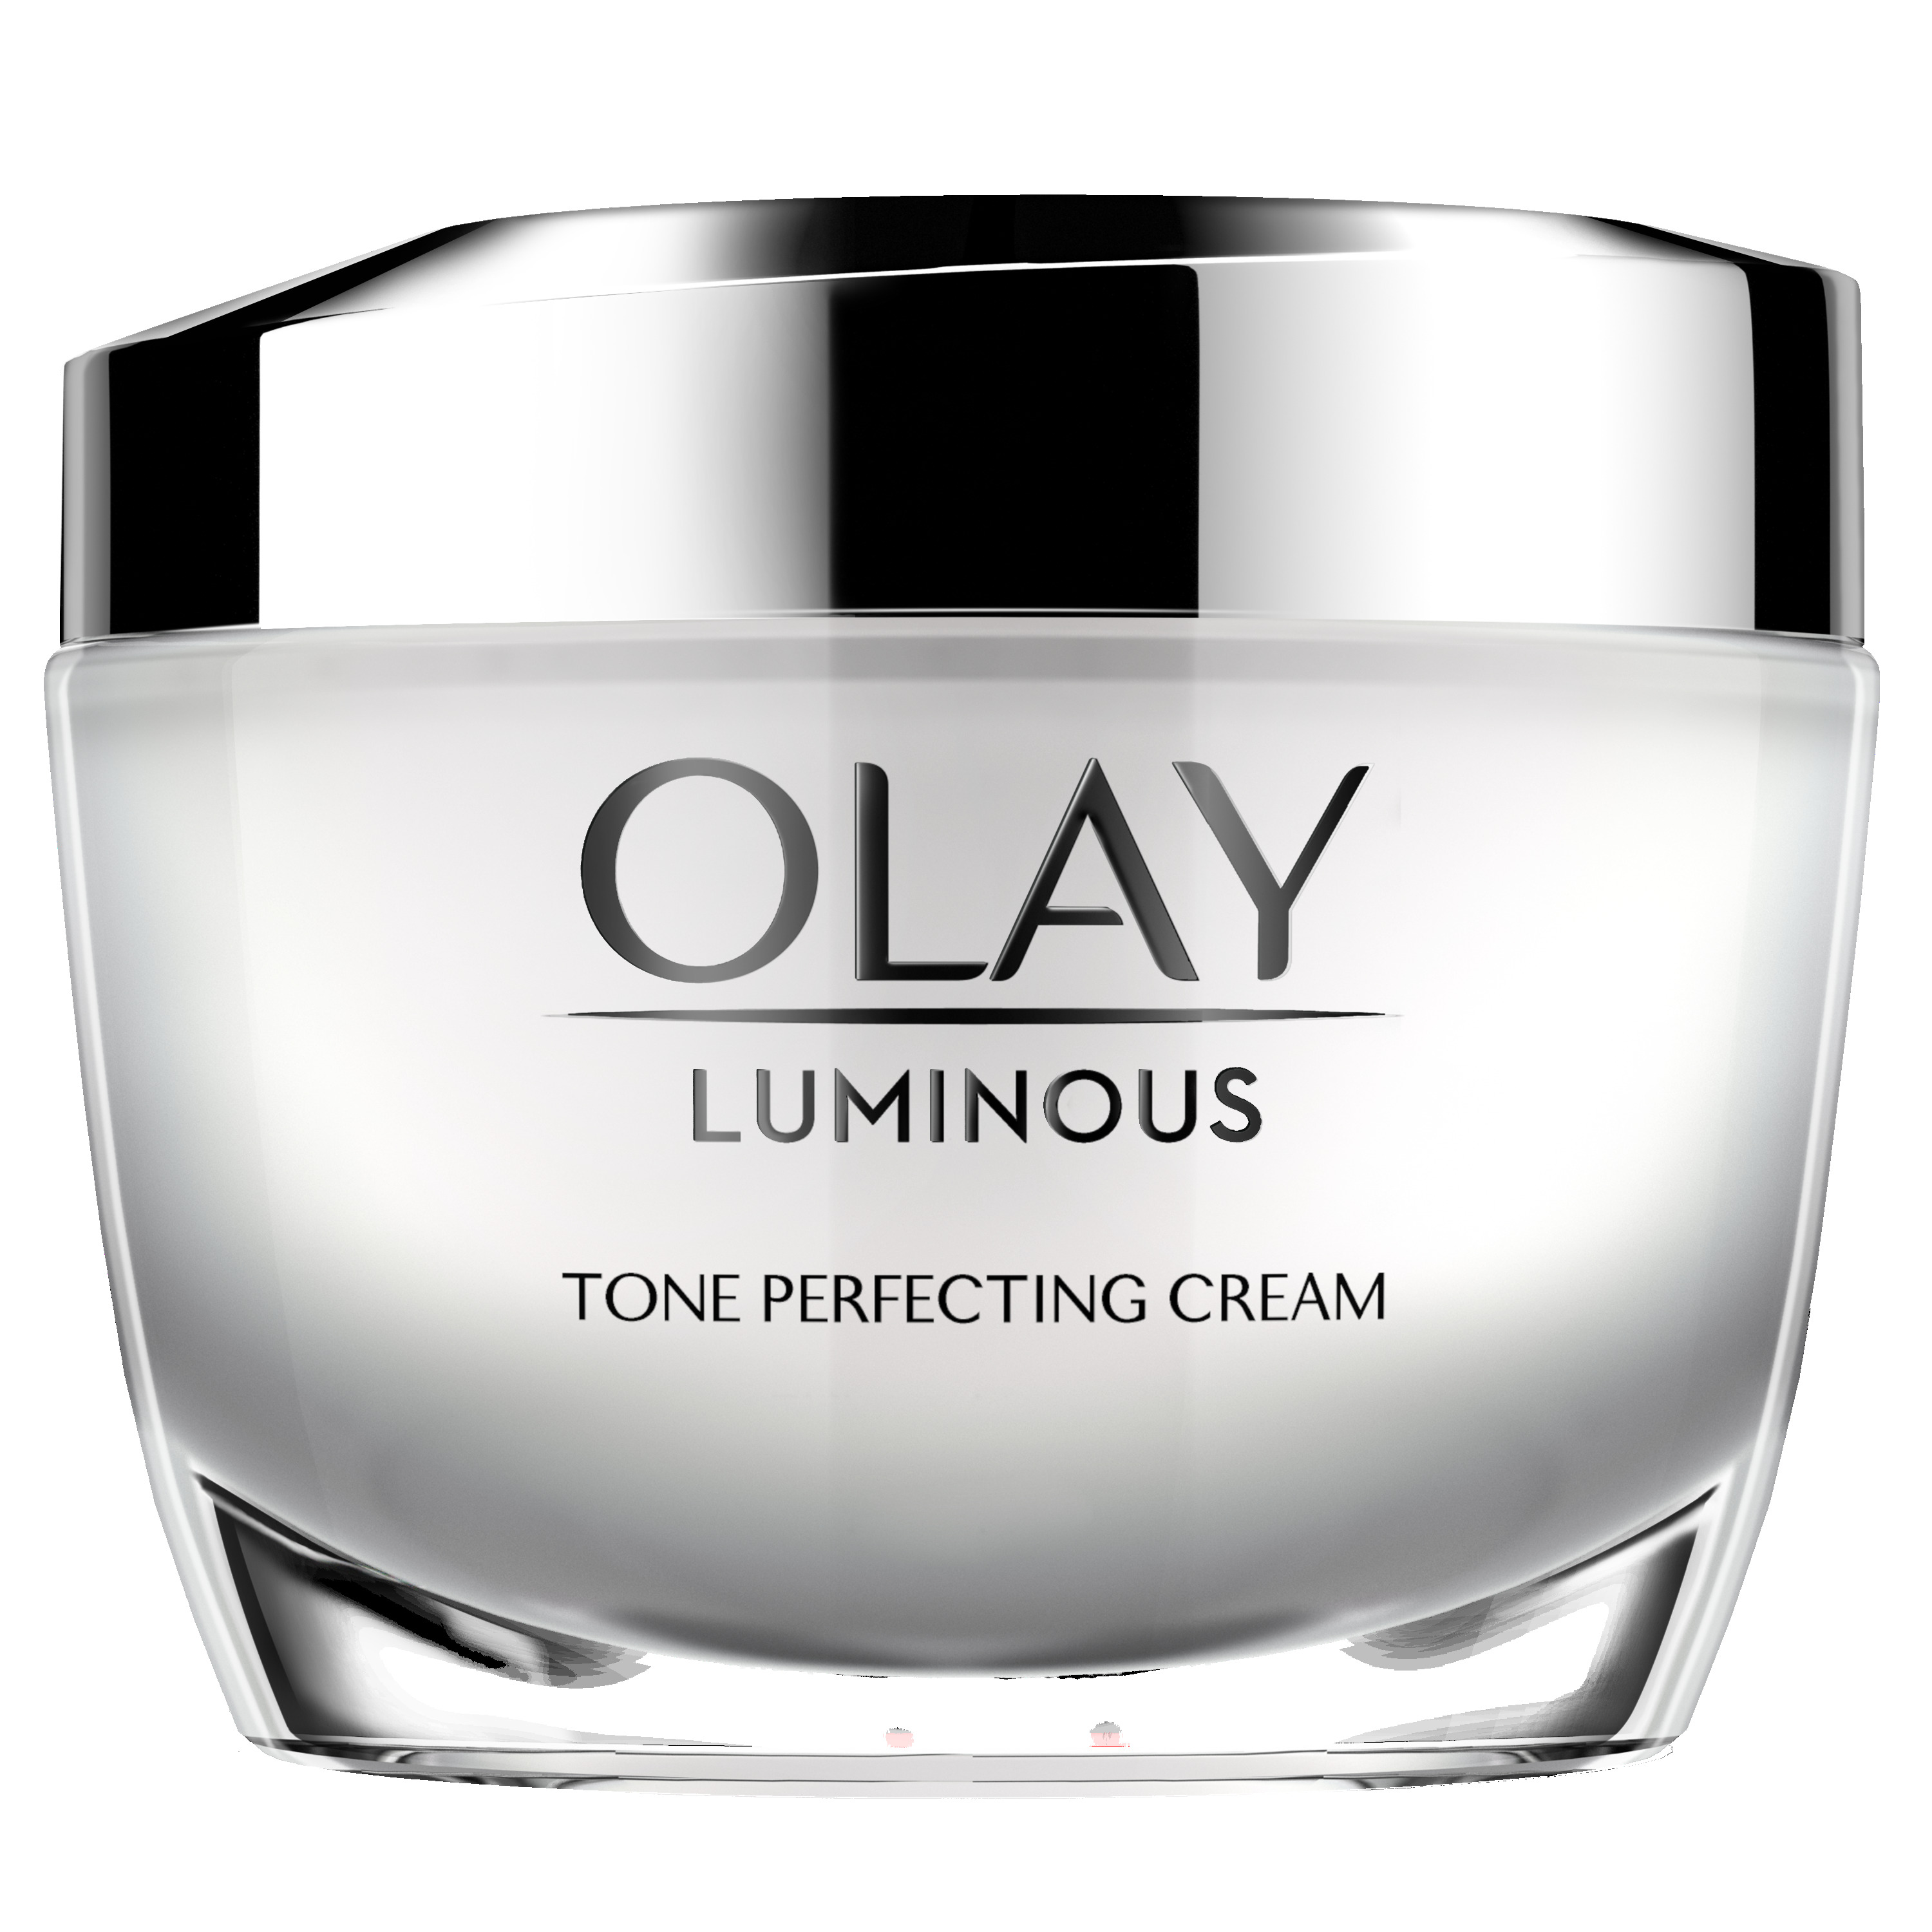 Olay Luminous Tone Perfecting Cream Face Moisturizer, 1.7 oz - image 1 of 7